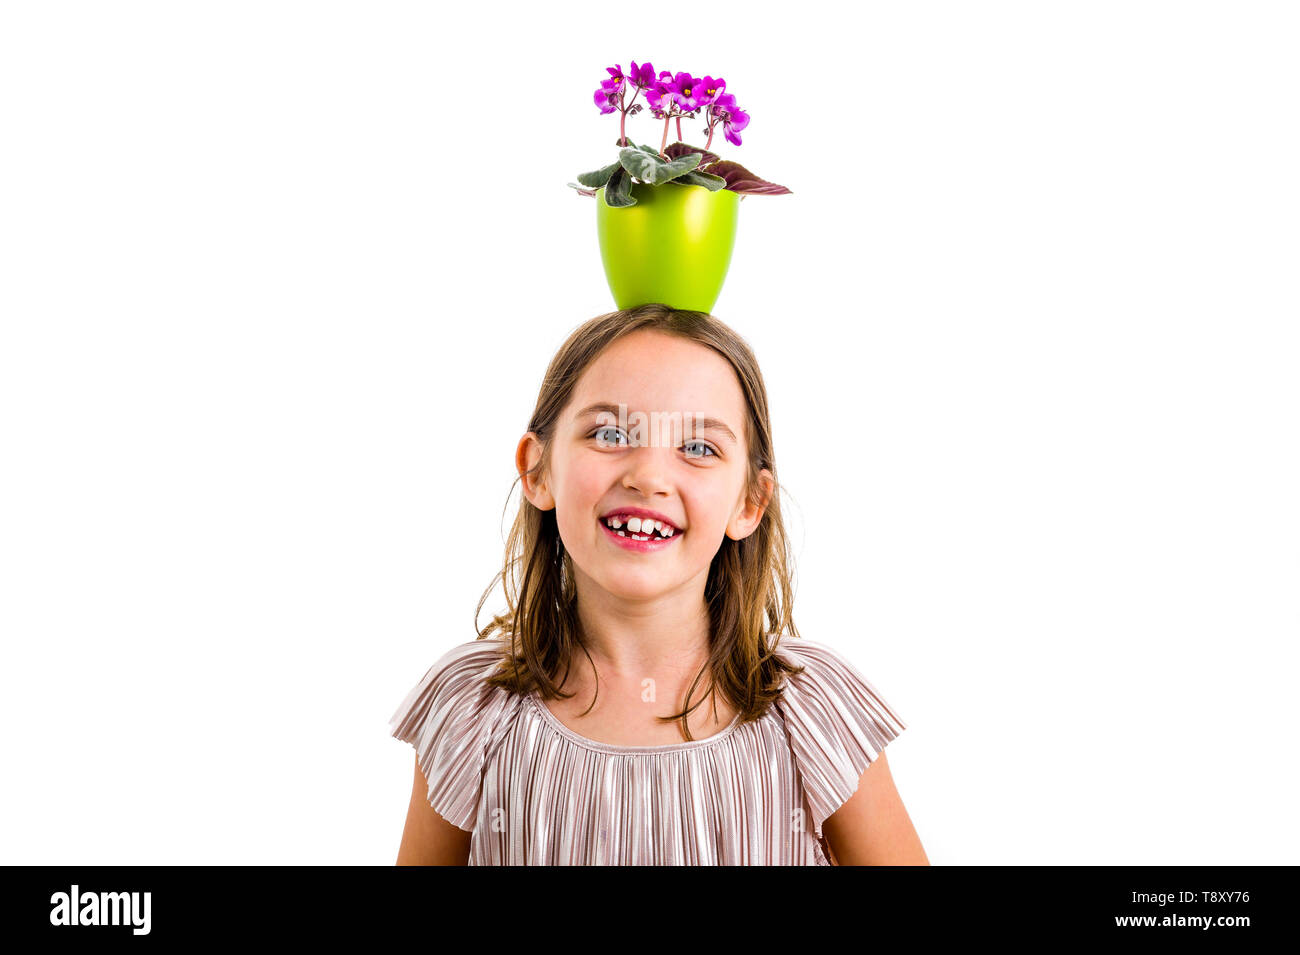 Mädchen mit Blumentopf auf den Kopf, Spaß haben ein Lächeln auf den Lippen. Kleines Mädchen im Kleid holding Green Flower Pot mit Viola Blumen auf dem Kopf Spaß, vermasseln Stockfoto